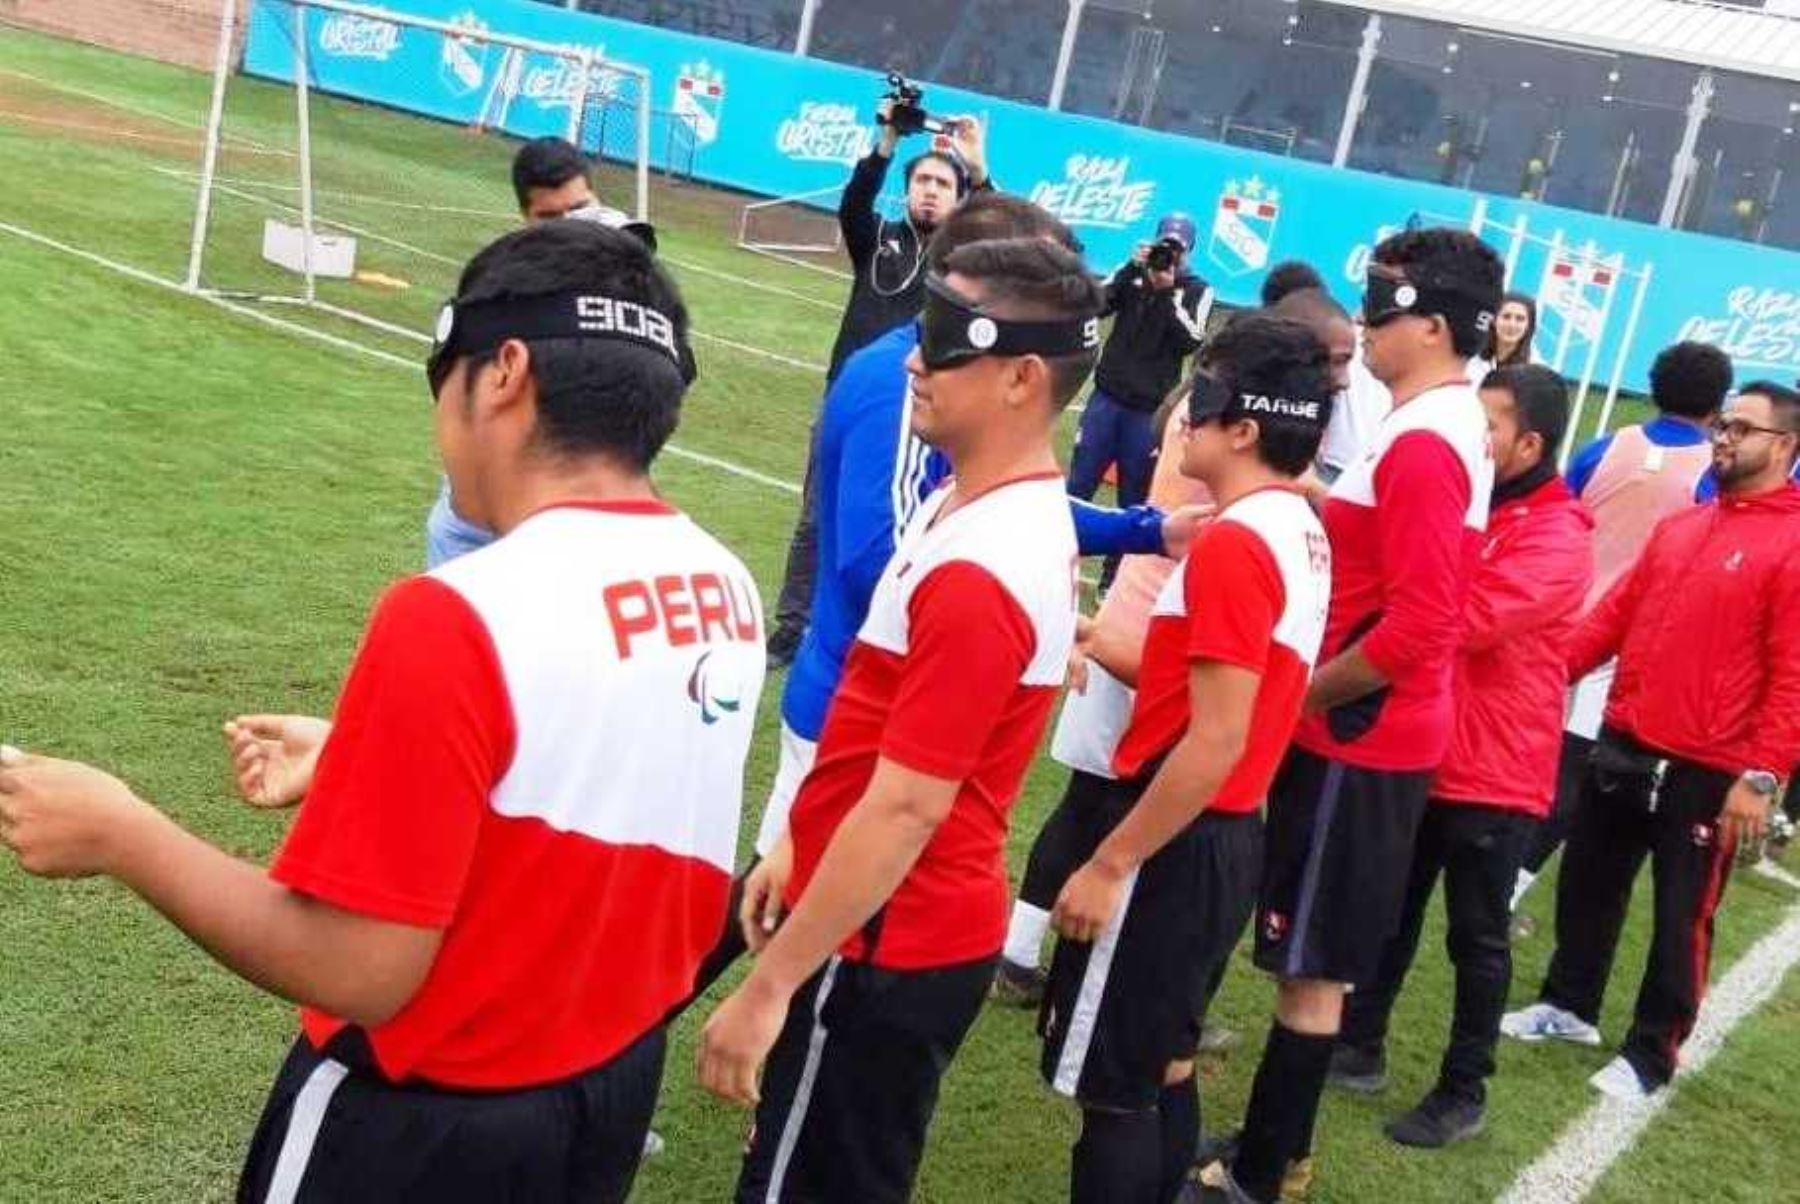 Lima 2019: paradeportistas de EsSalud entrenan al tope para lograr medallas. Foto: ANDINA/Difusión.